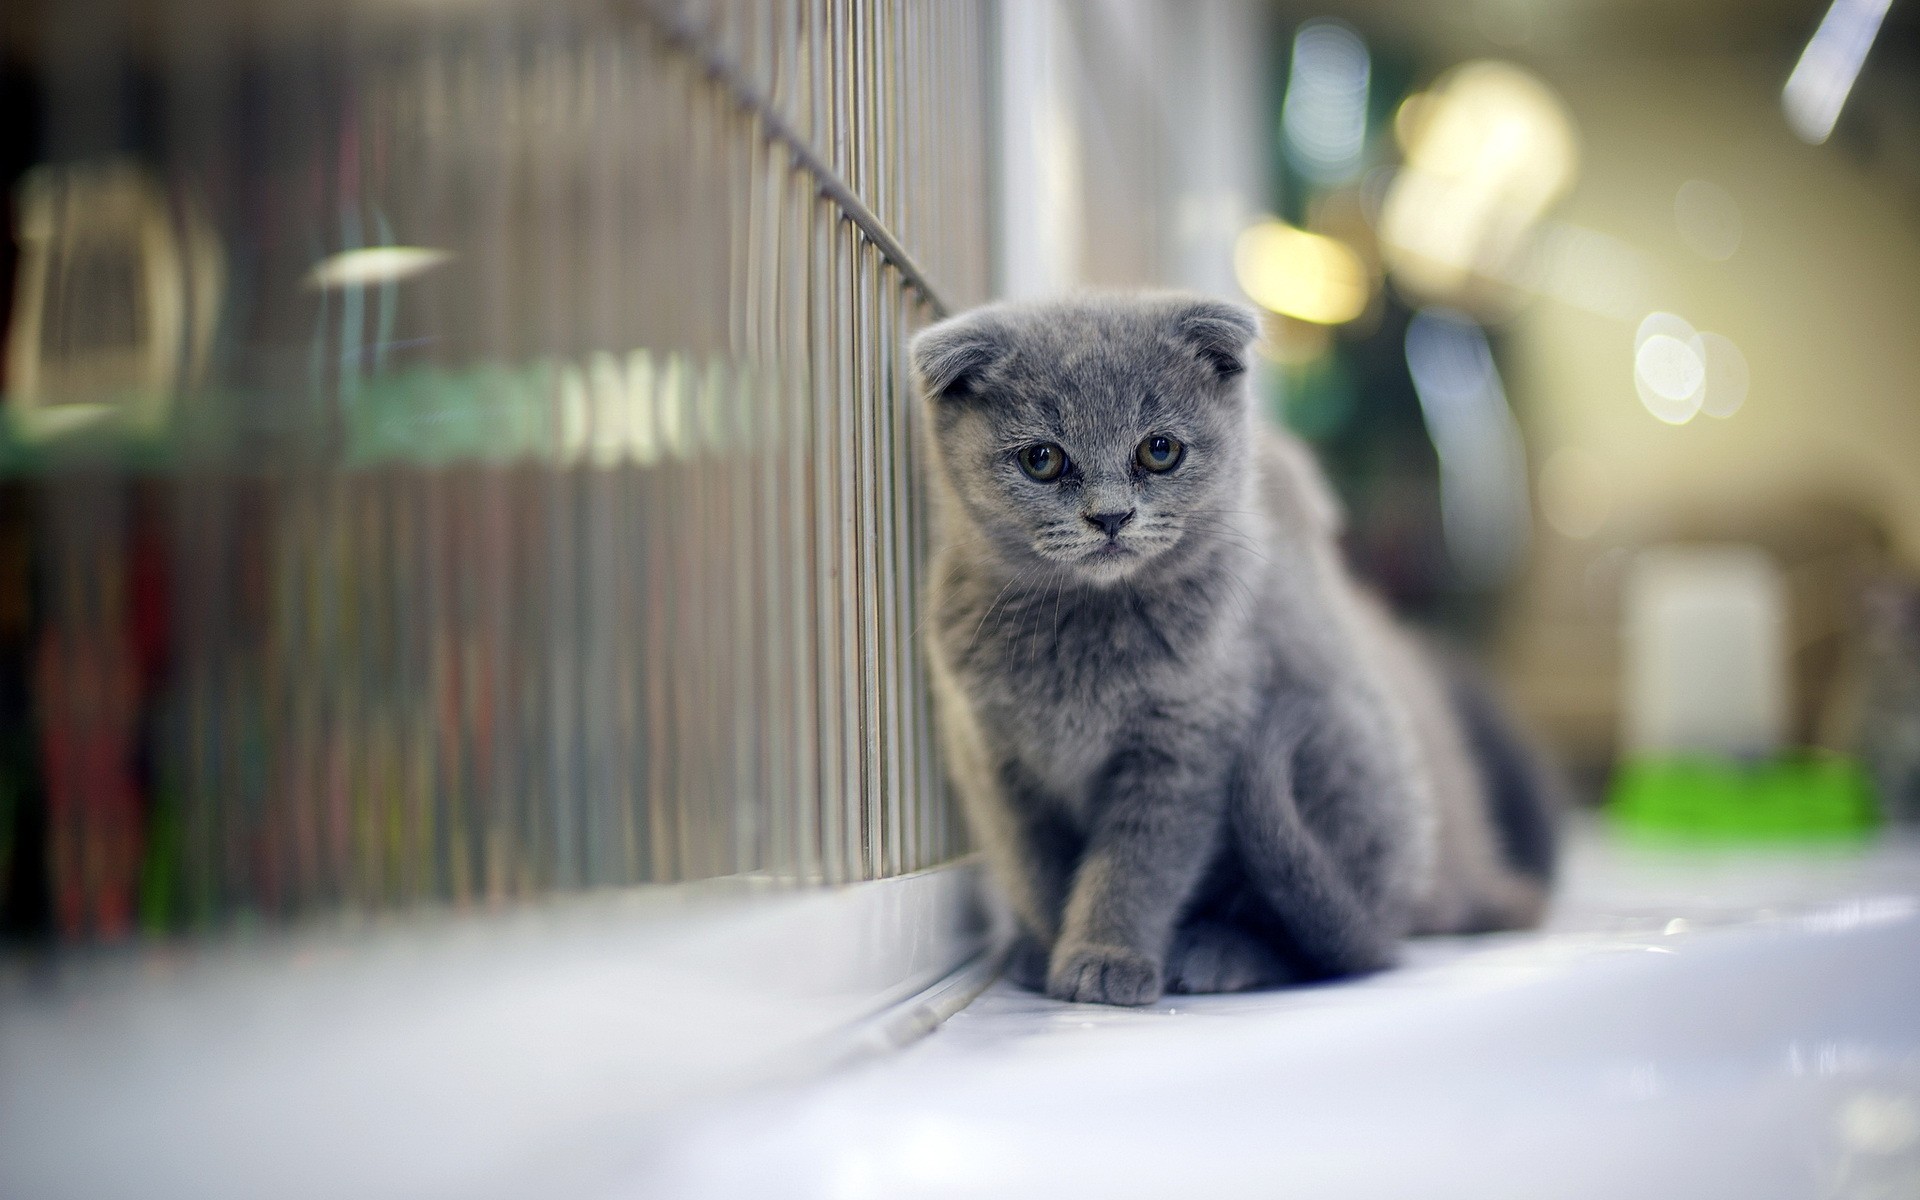 Grumpy Gray Kitten wallpapers Grumpy Gray Kitten stock photos